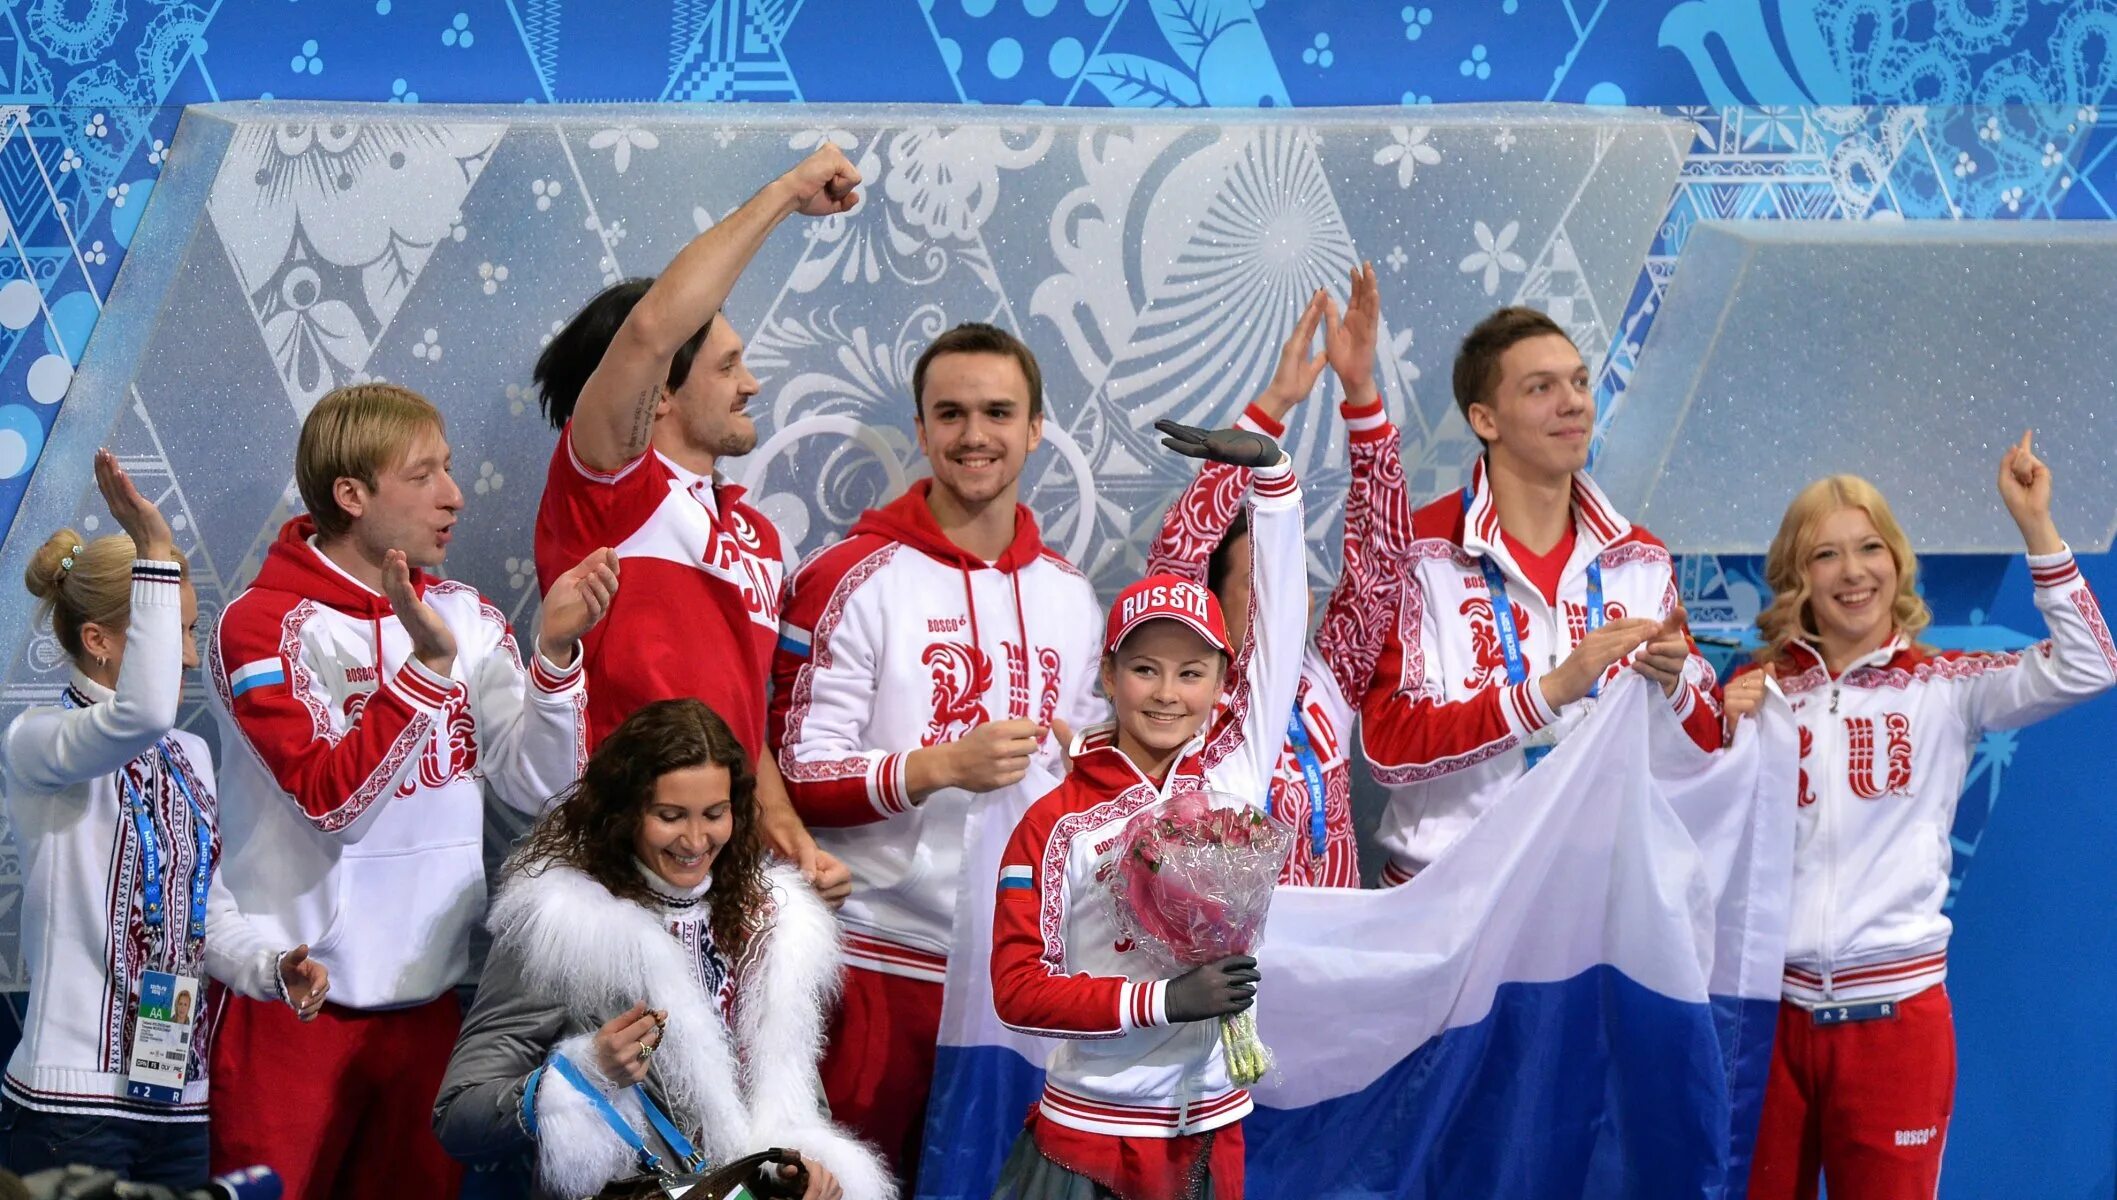 Сборная команда по фигурному катанию 2014 Сочи. Тутберидзе и Плющенко Сочи 2014.